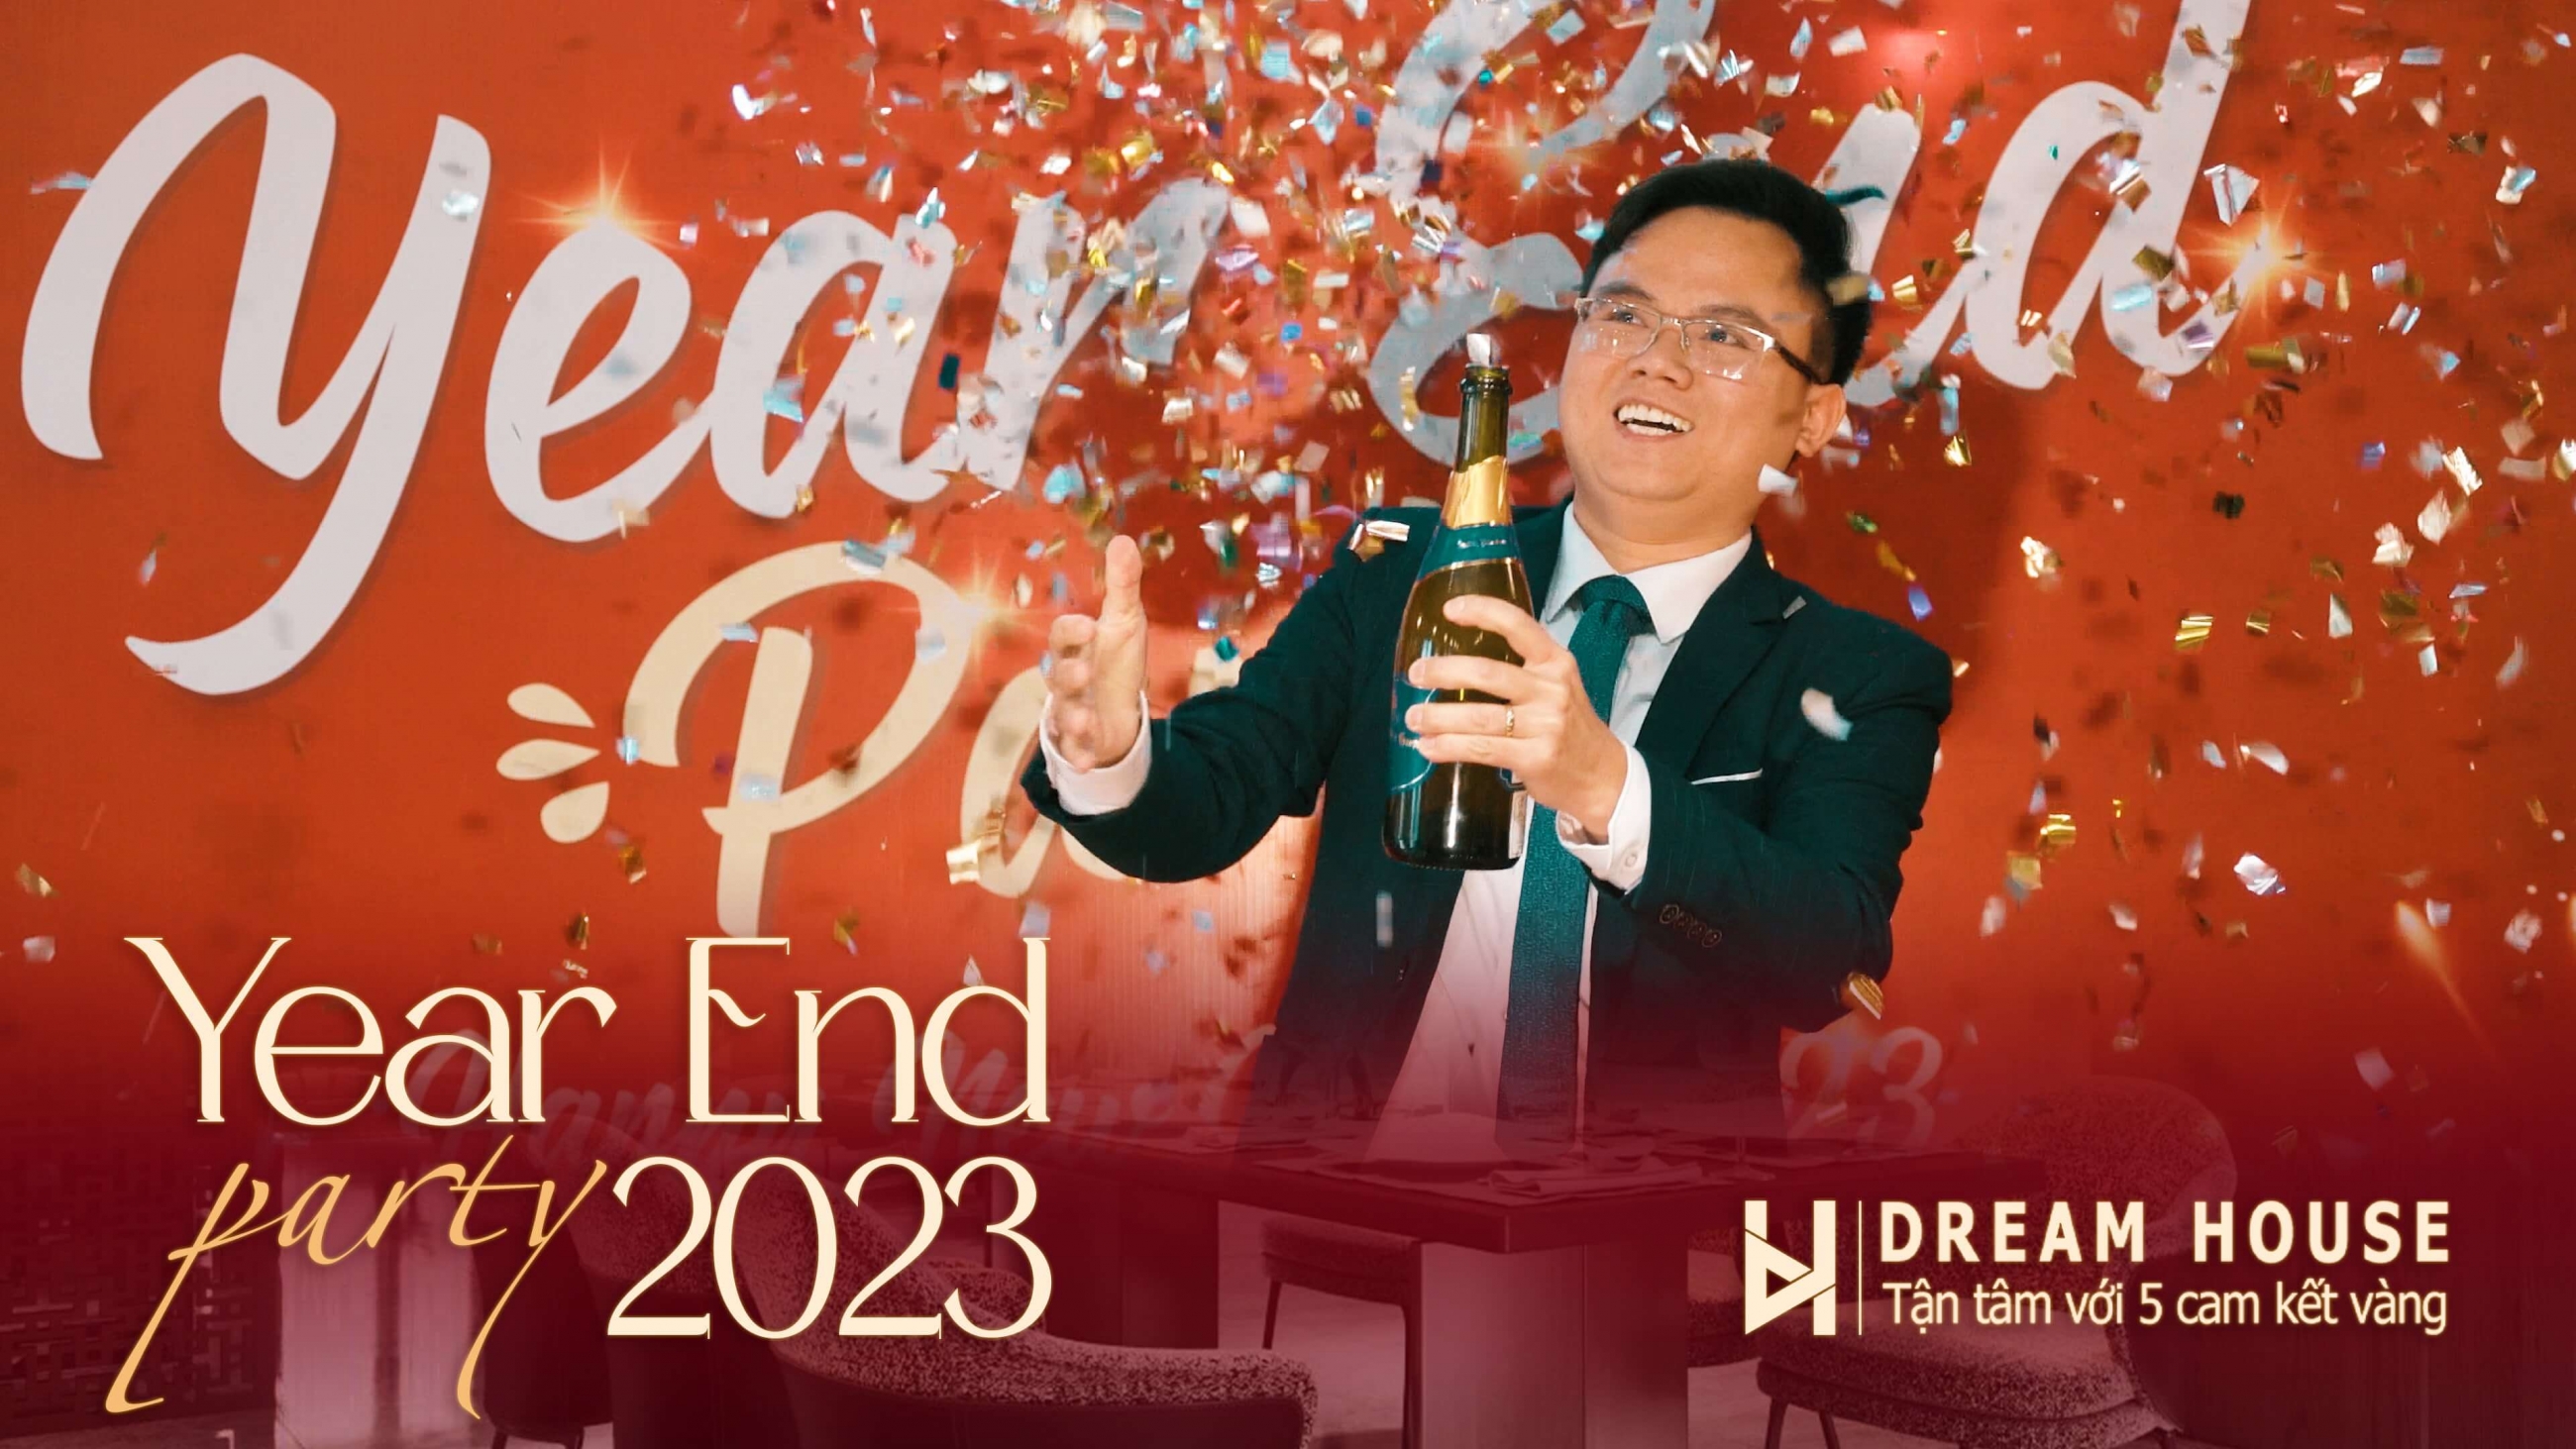 Dreamhouse Year End Party 2022 | Chào đón năm mới 2023